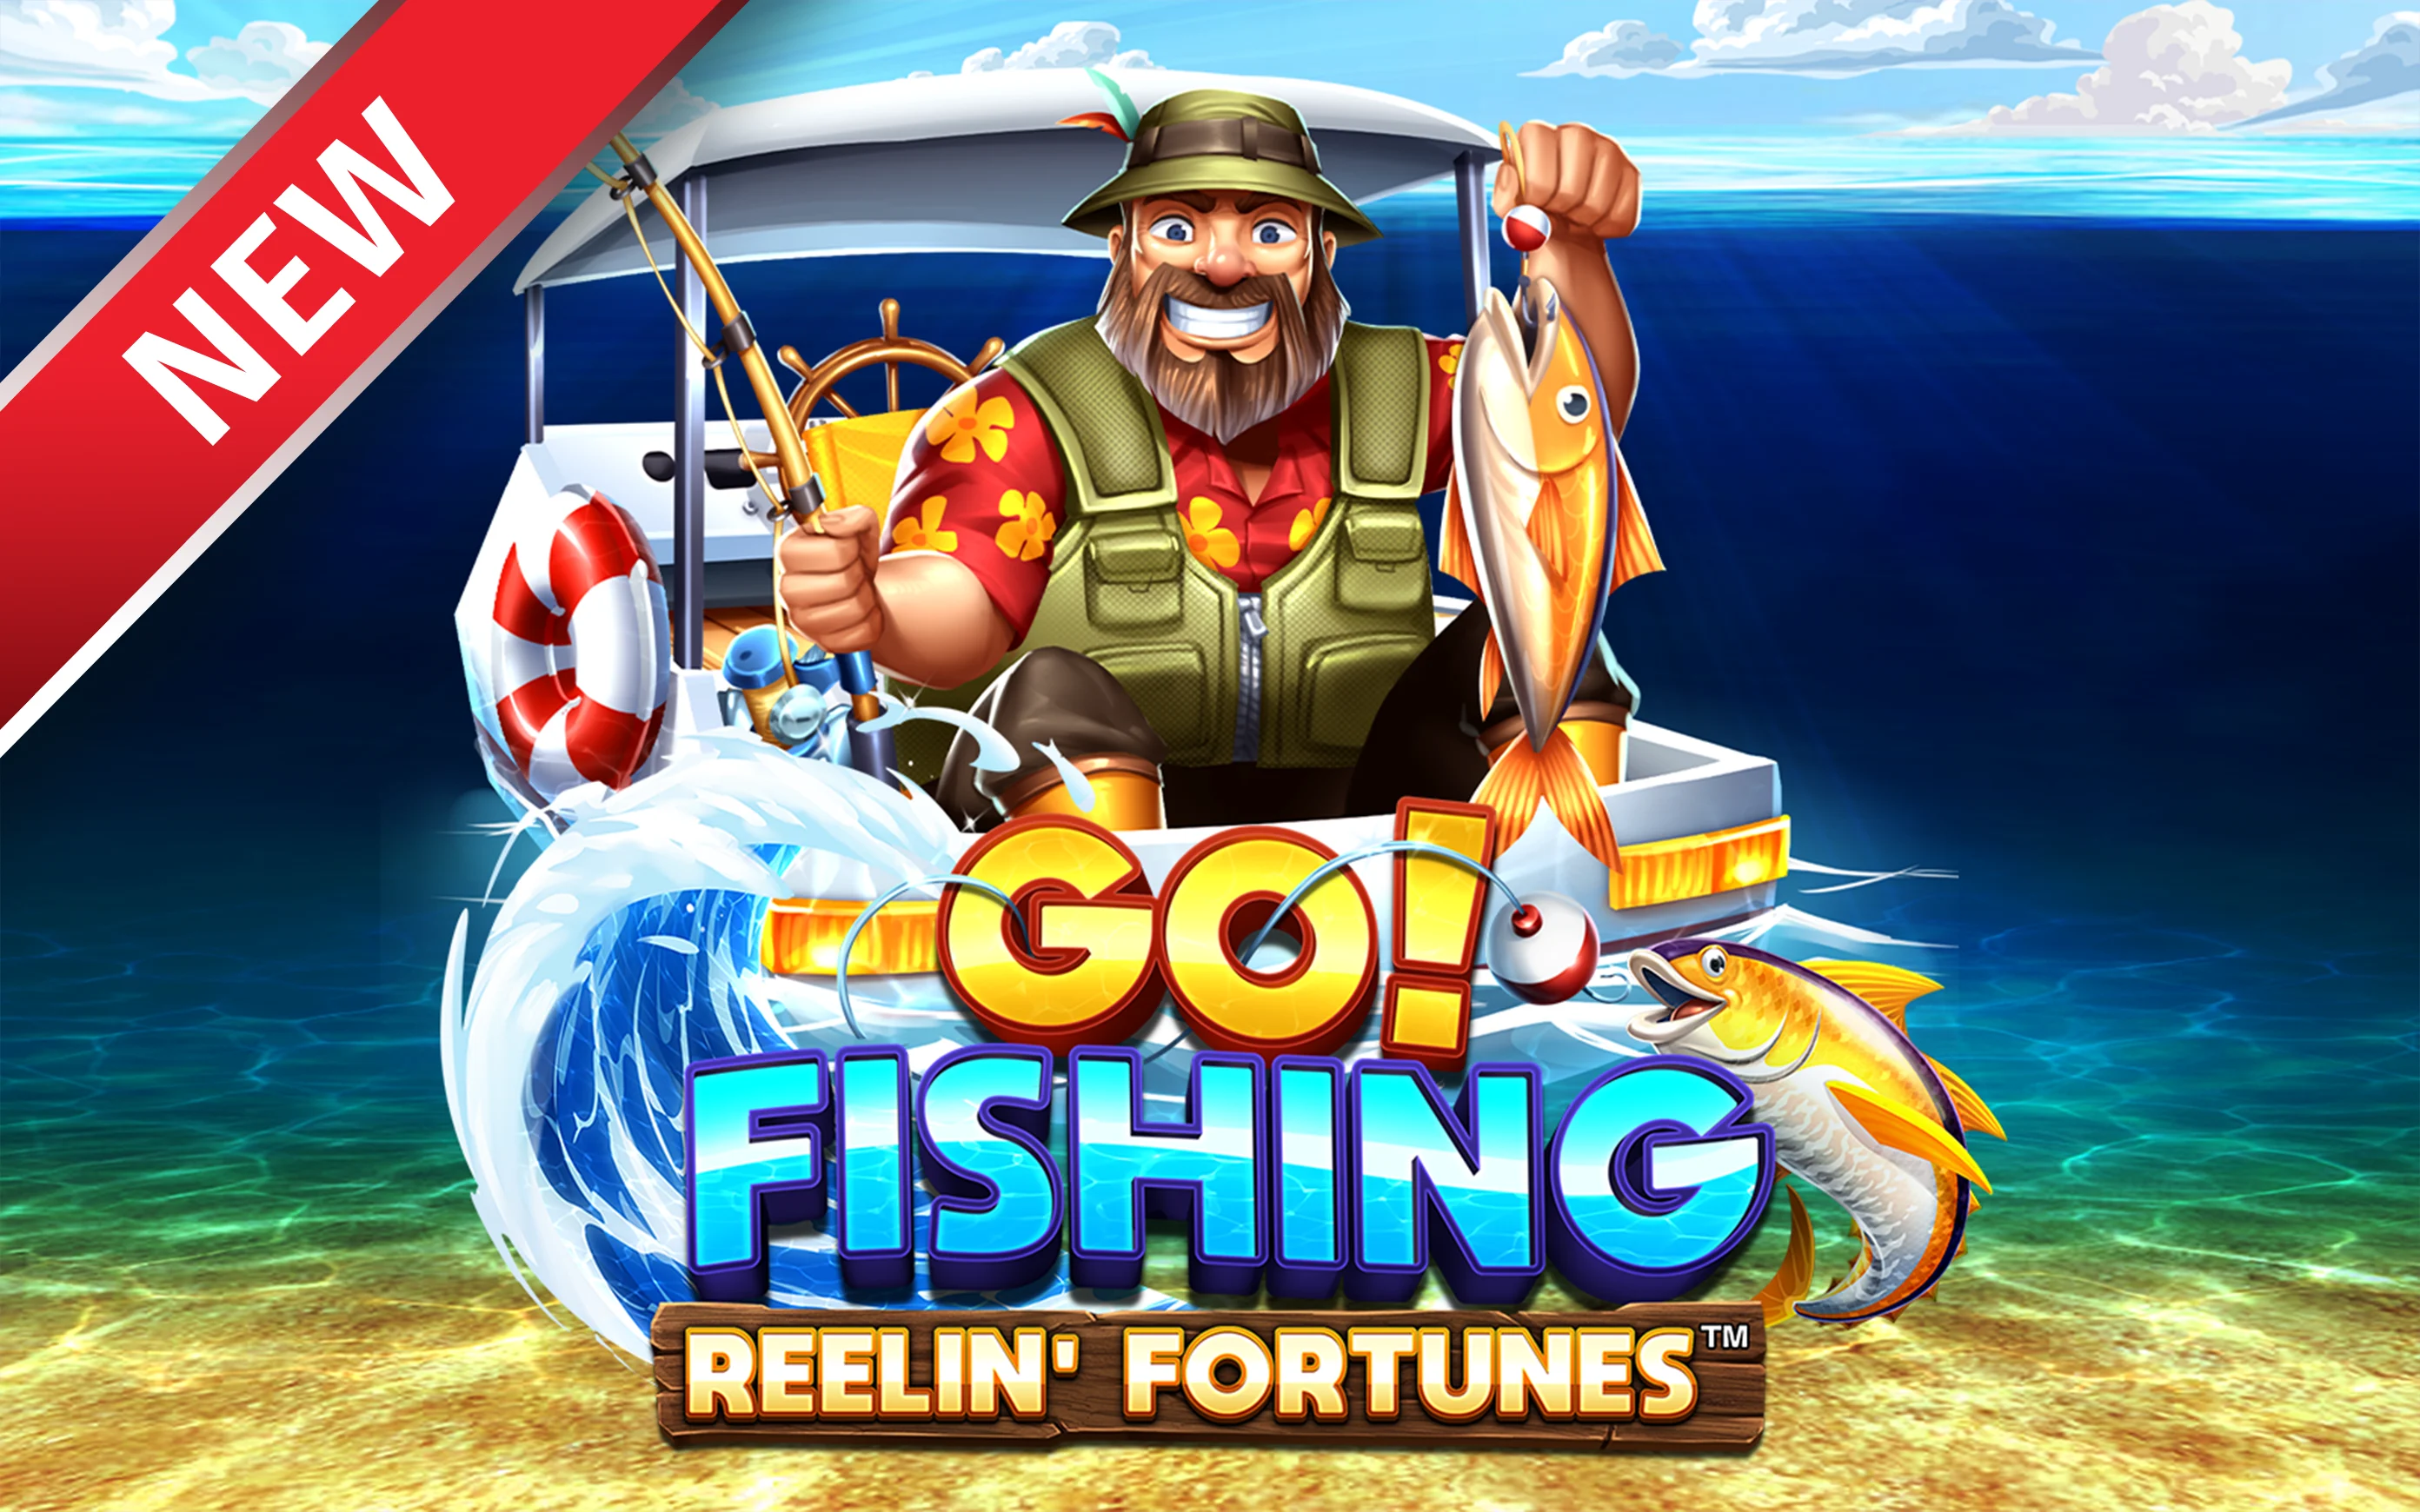 Speel Go! Fishing: Reelin' Fortunes™ op Starcasino.be online casino